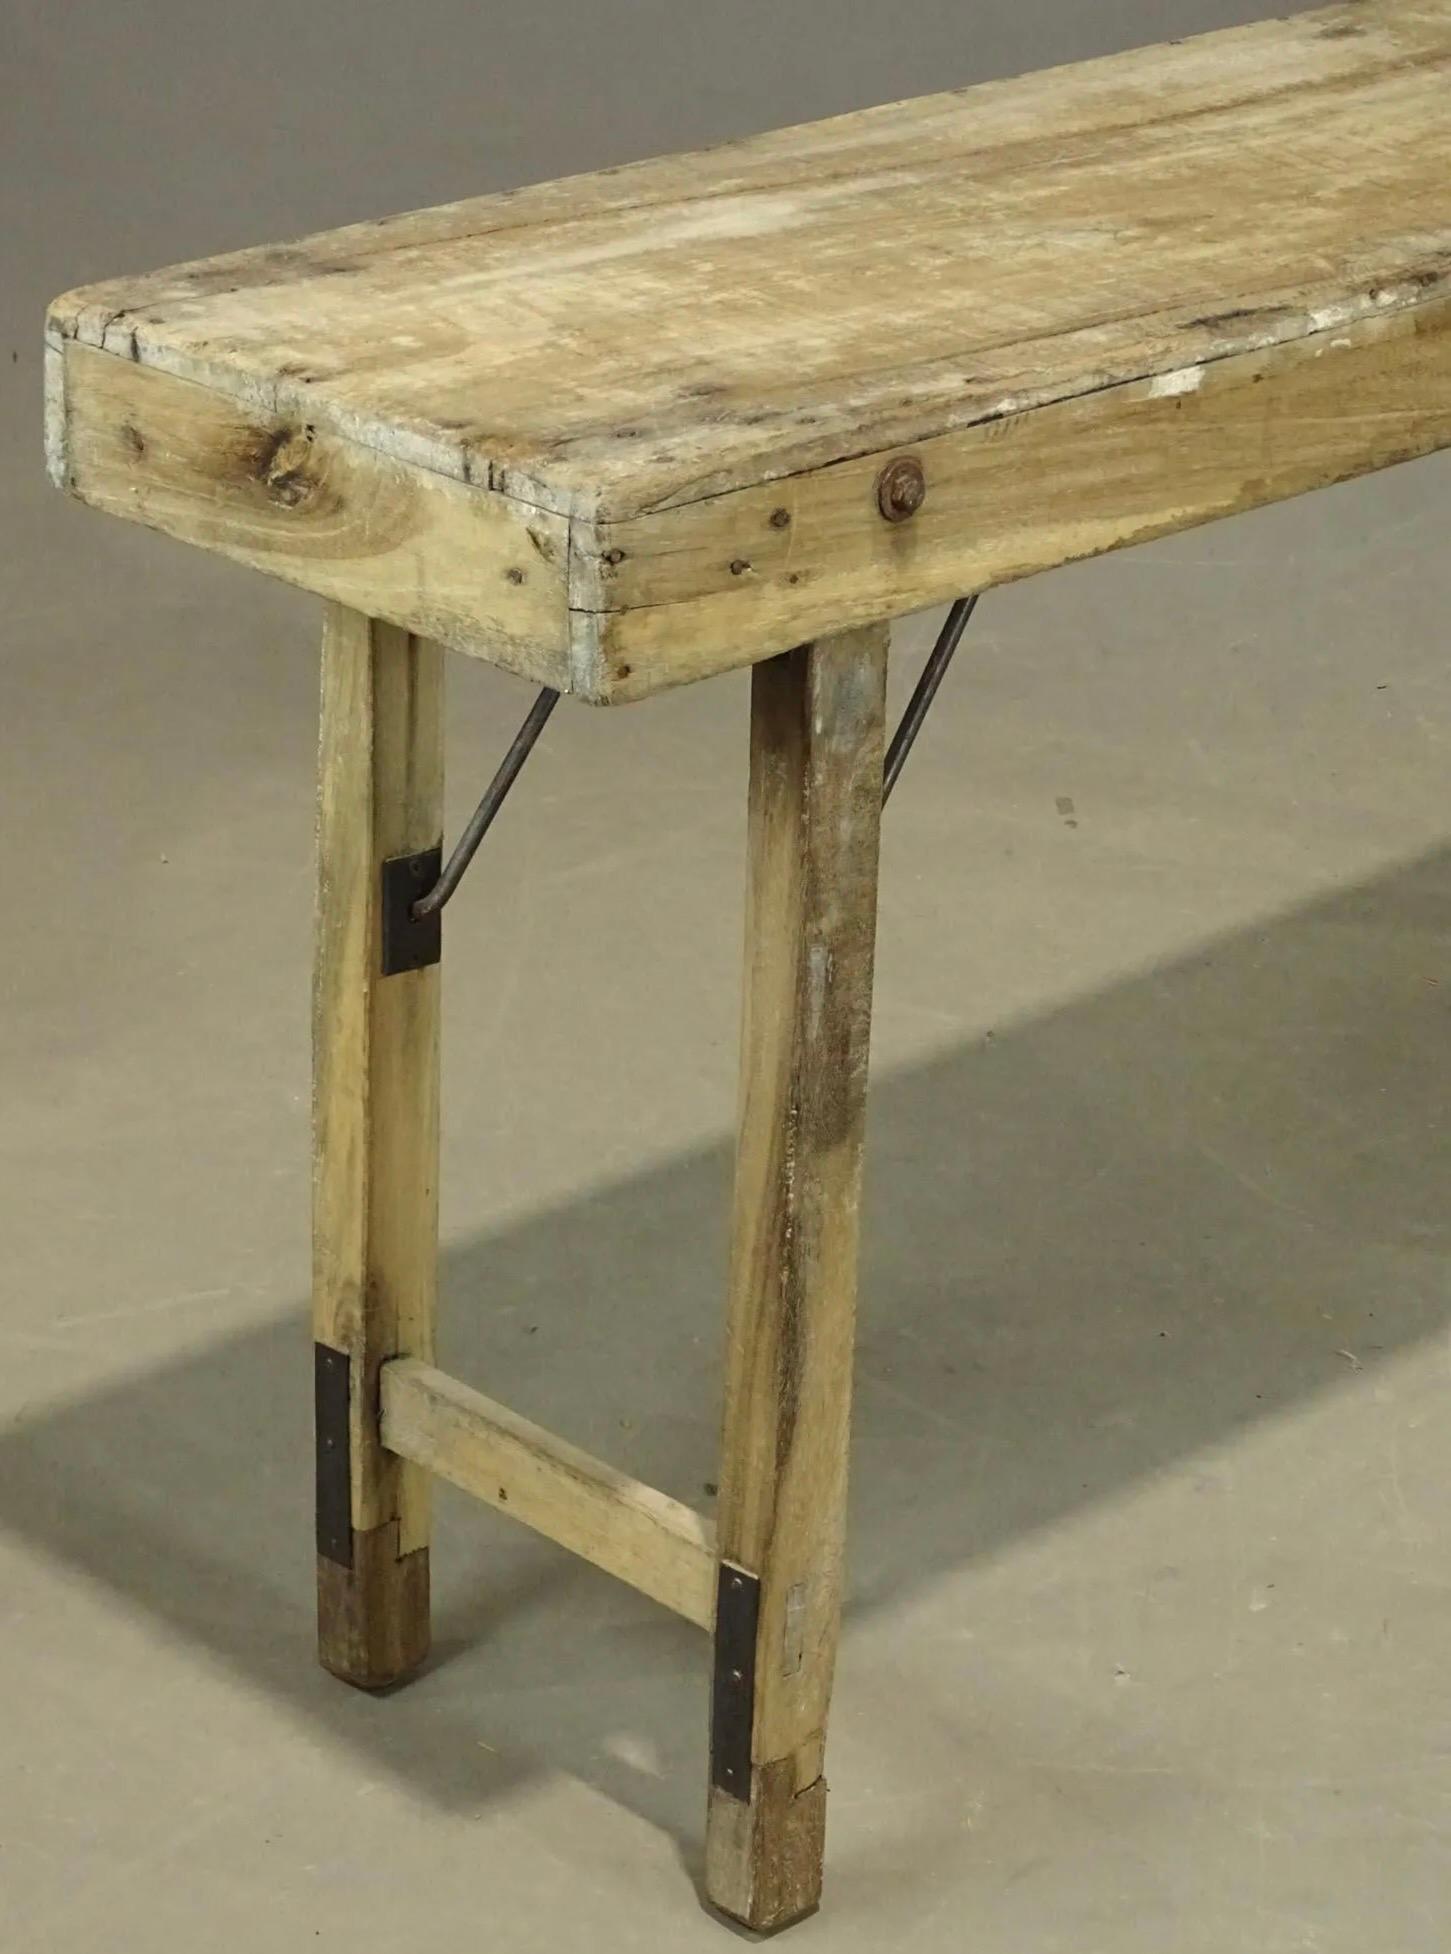 Ein früher rustikaler Klapptisch, der von Handwerkern möglicherweise zum Aufhängen von Papier verwendet wurde. Der Tisch lässt sich zusammenklappen und kann so leicht zu Projekten transportiert werden. 
Verwenden Sie diesen Tisch als Konsolentisch,